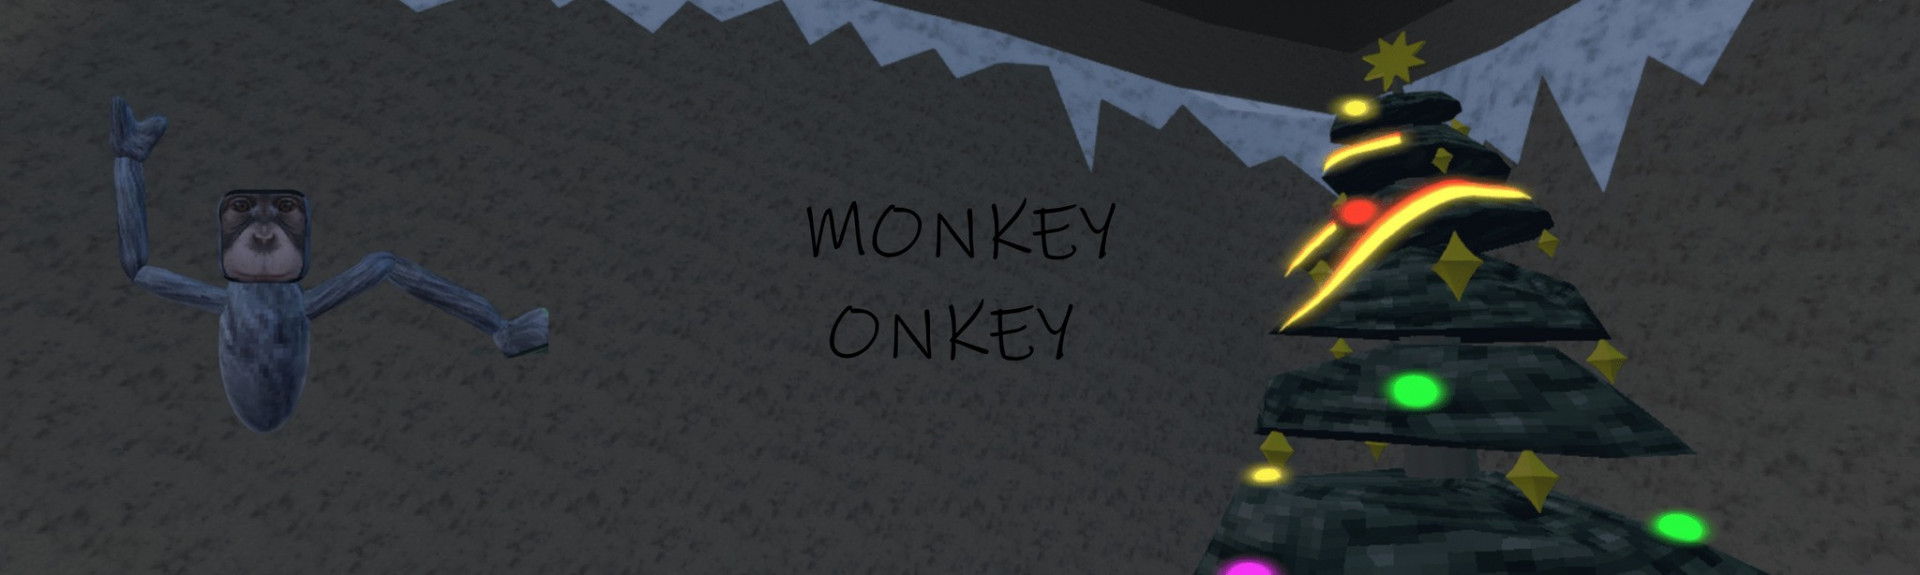 Monkey Onkey